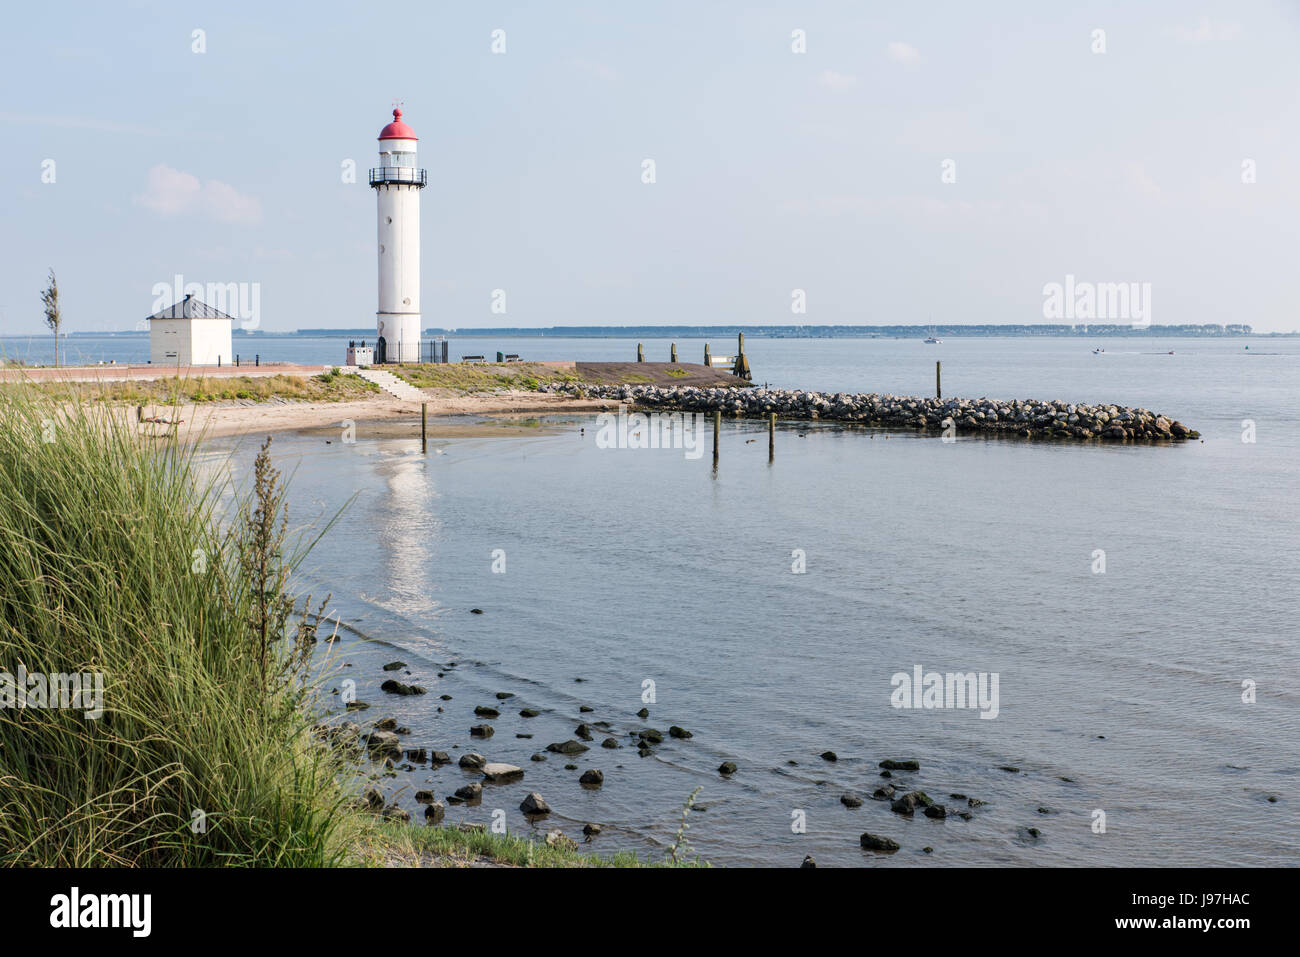 Historique Le phare blanc avec le haut en cuivre rouge caractéristique à la rive de l'Haringvliet à Hellevoetsluis dans le sud-ouest de la Hollande. Banque D'Images